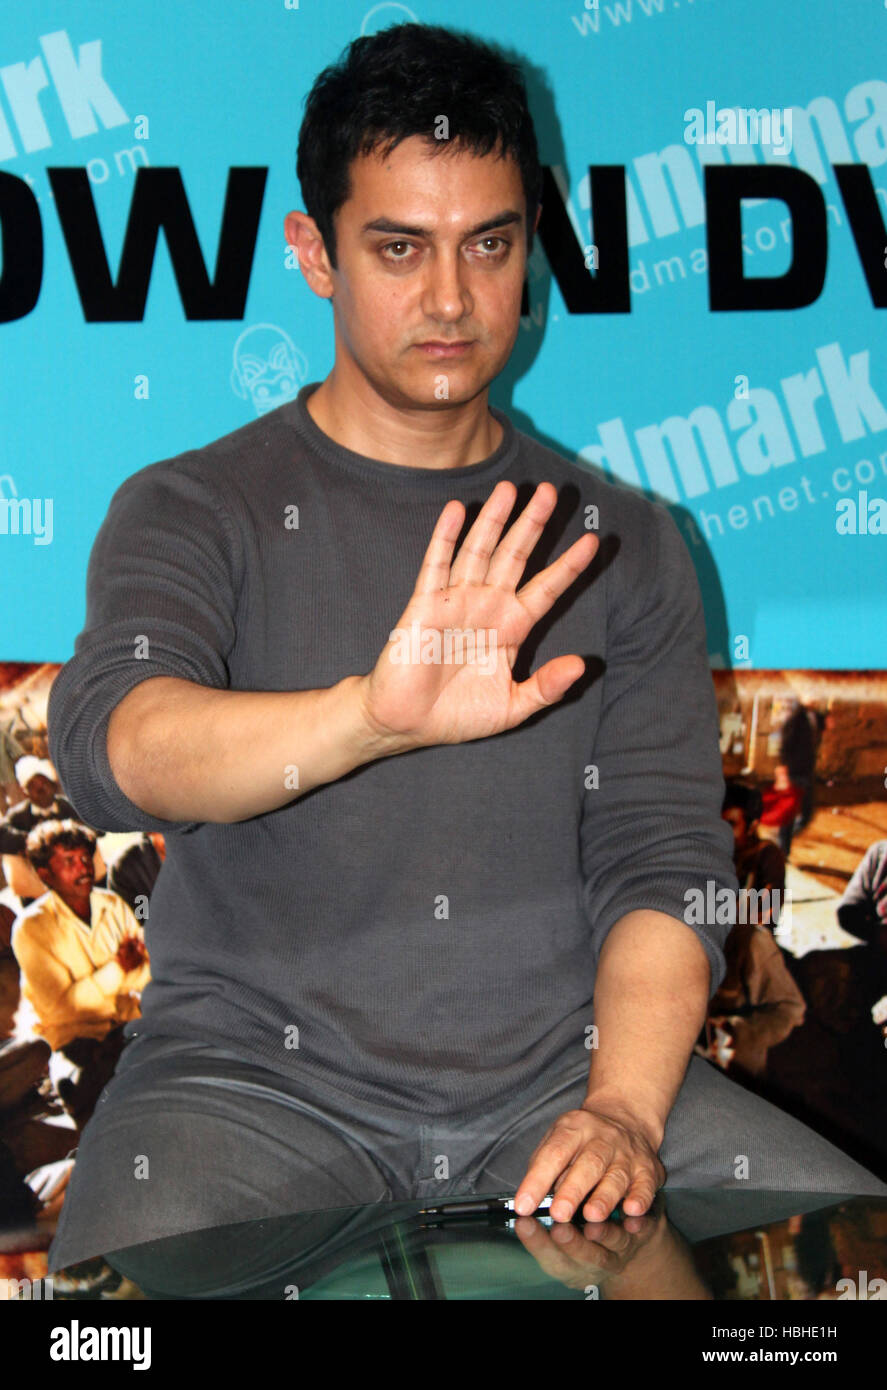 Actor de Bollywood Aamir Khan gestos durante el lanzamiento del DVD de la película Peepli Live en Mumbai, India, el 4 de noviembre de 2010. Foto de stock